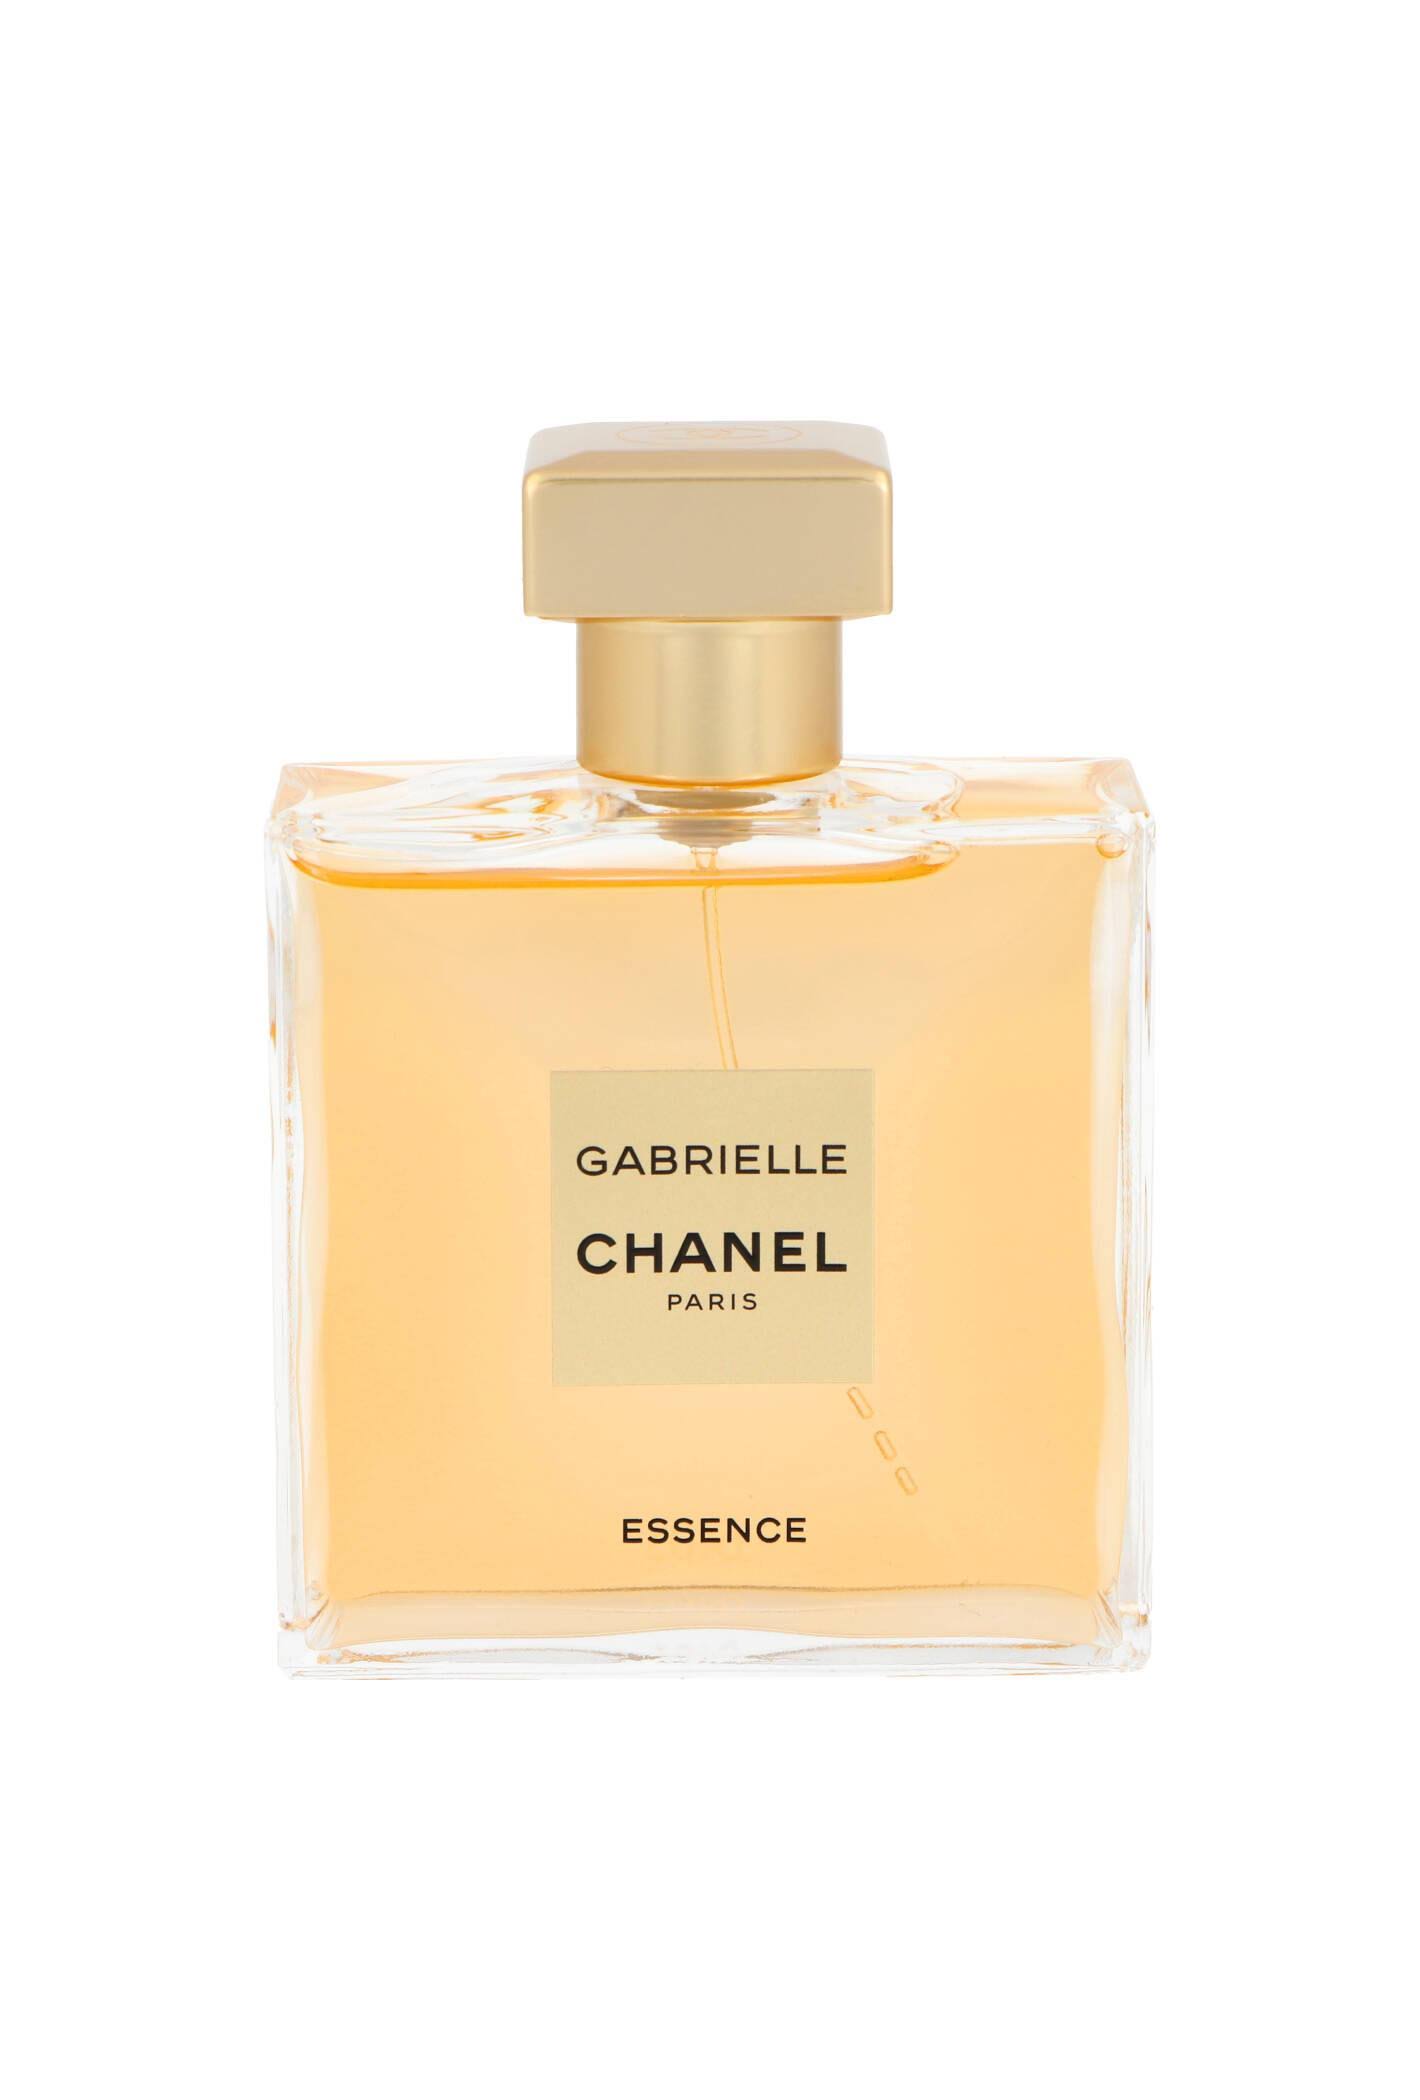 Veale's Allcare Pharmacy - Chanel Gabrielle Essence Eau de Parfum Spray -  100ml